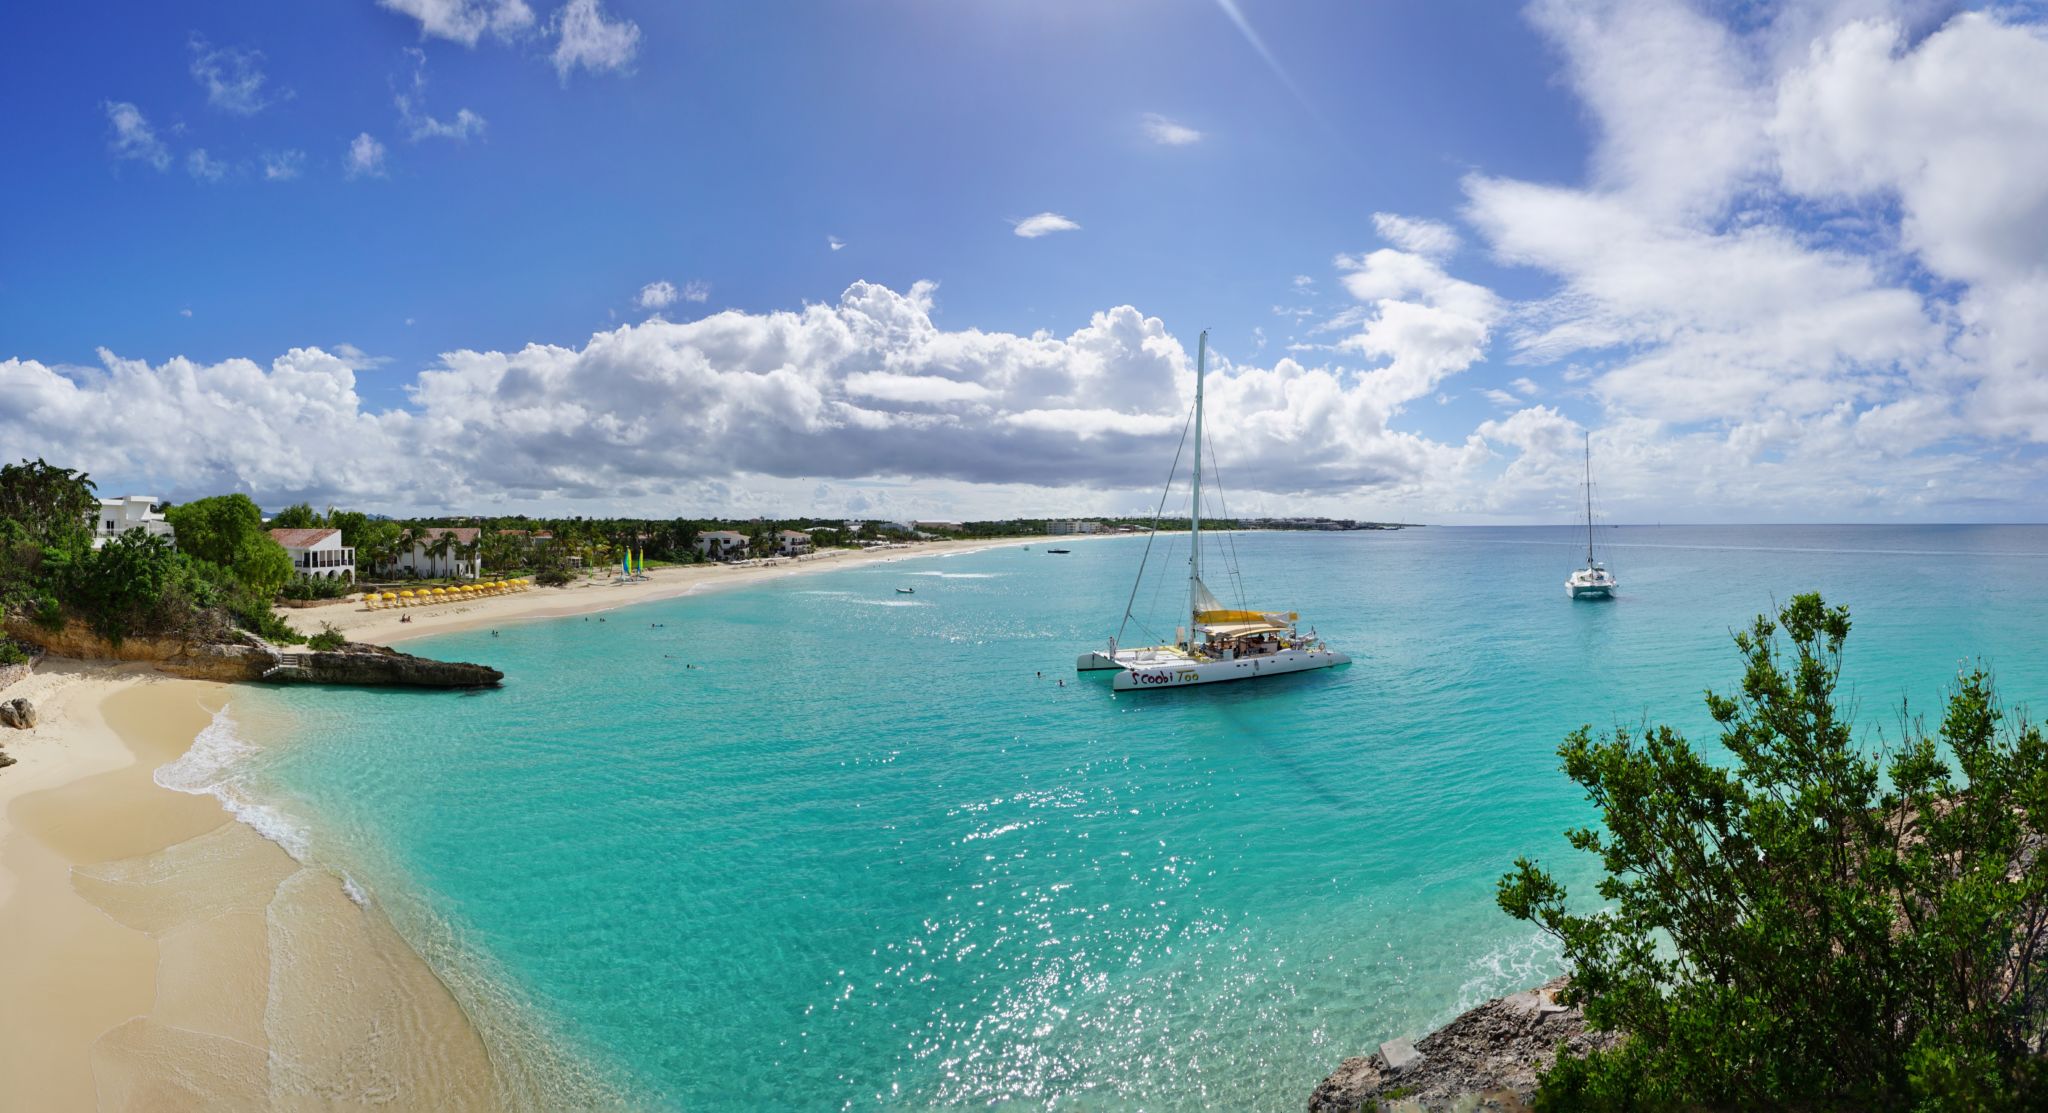 The Leeward Islands: St. Martin, Anguilla, St. Barts, St. Kitts, Nevis